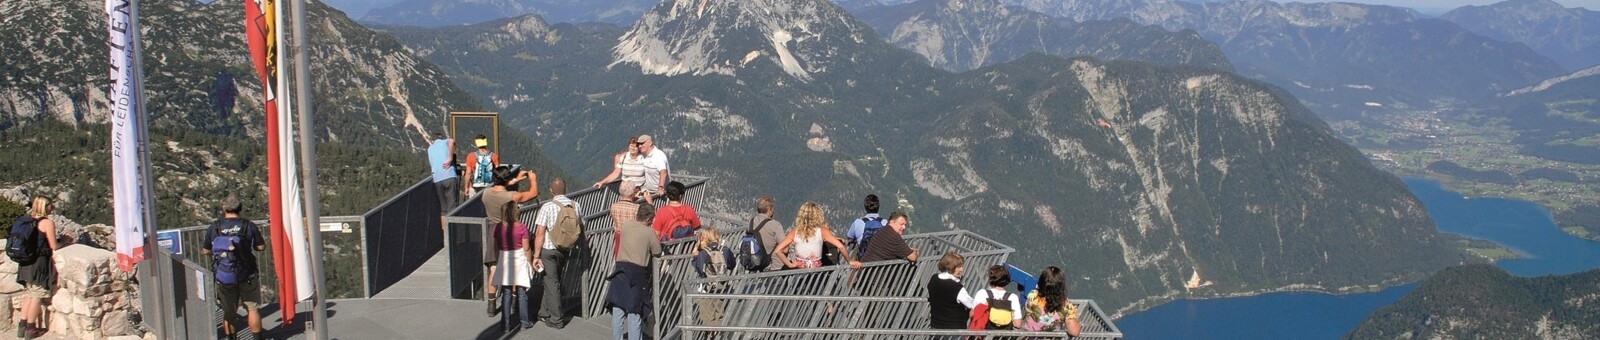     Dachstein mountain: 5fingers viewing platform 